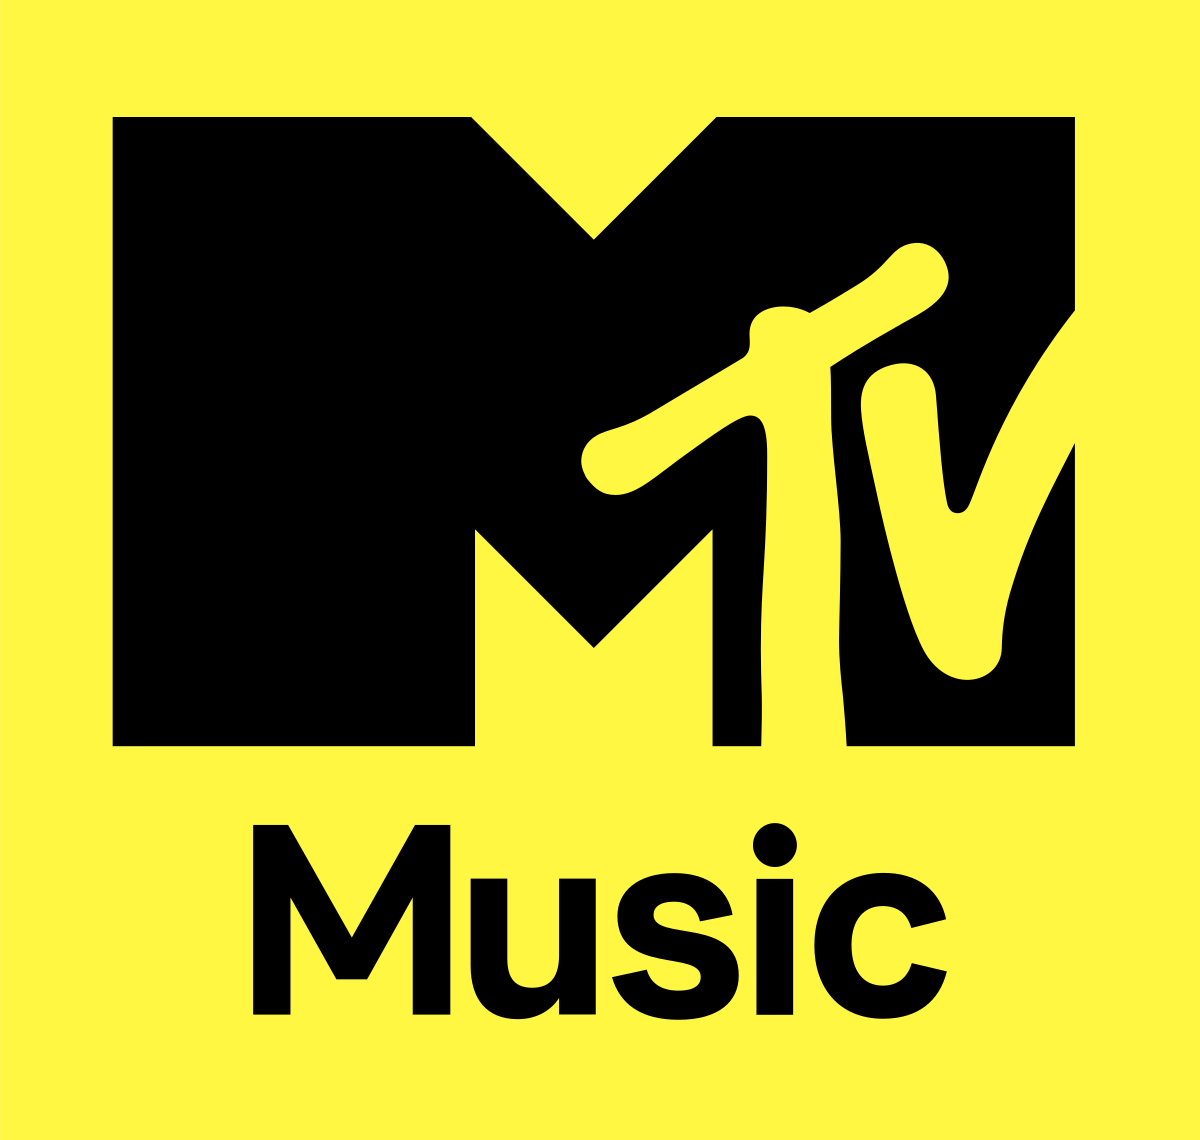 MTV Music (British and Irish TV - Wikipedia